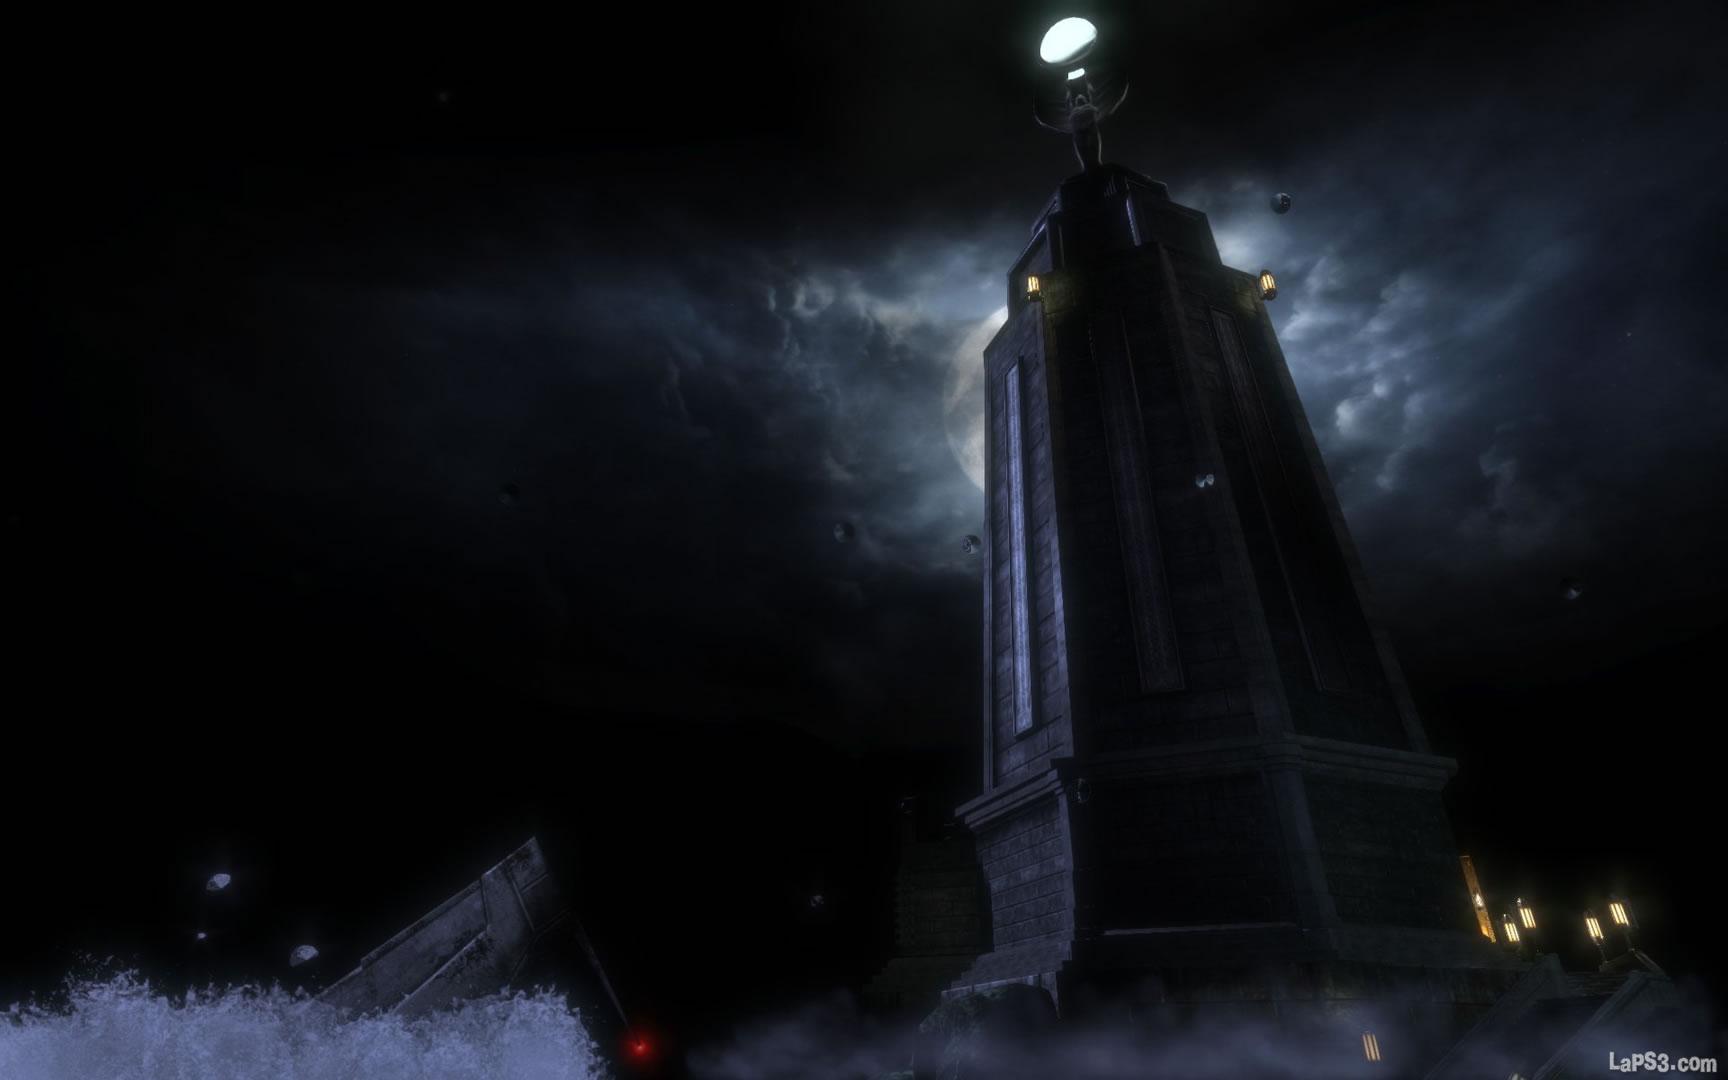 El faro es uno de los símbolos más importantes de la saga BioShock.